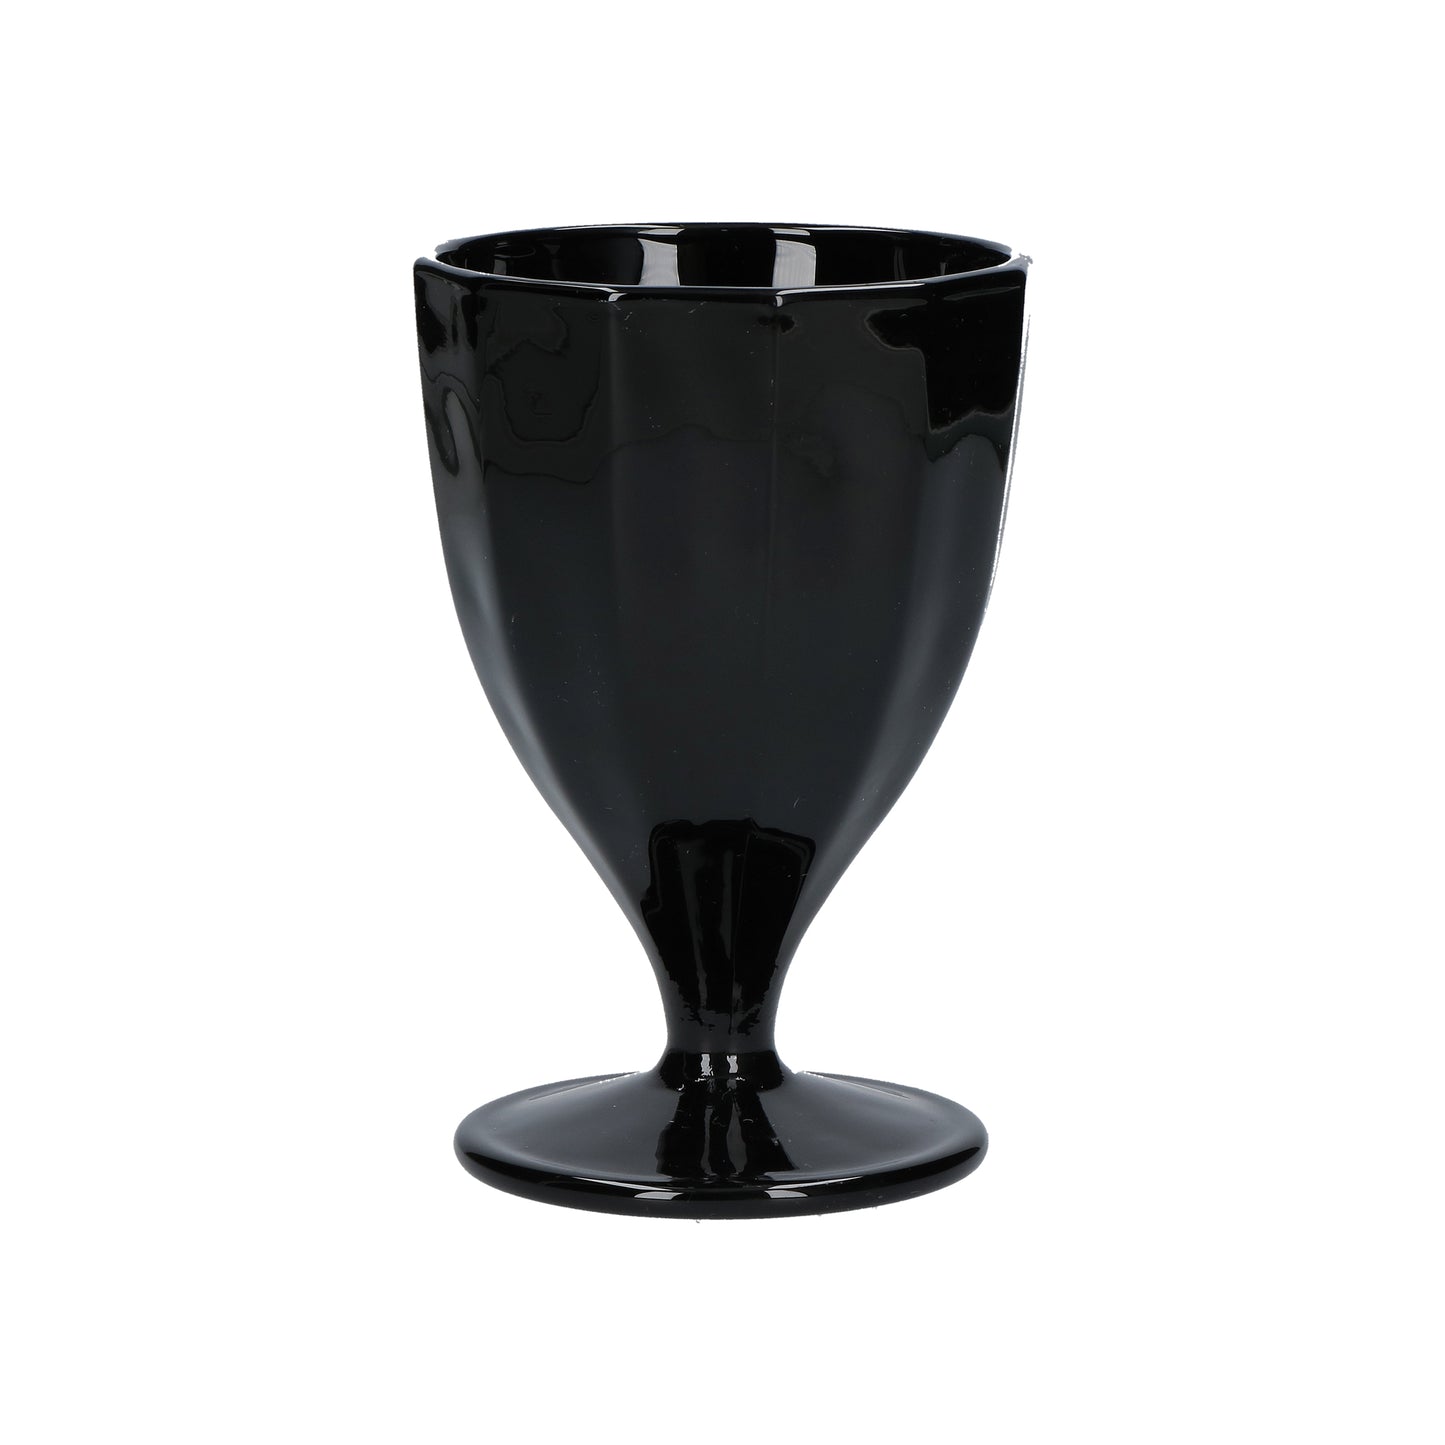 Confezione 6 calici in vetro nero cc 300 - Ø 8,5 - h 13 cm. Lavabili in lavastoviglie. In negozio e online su tuttochic.it